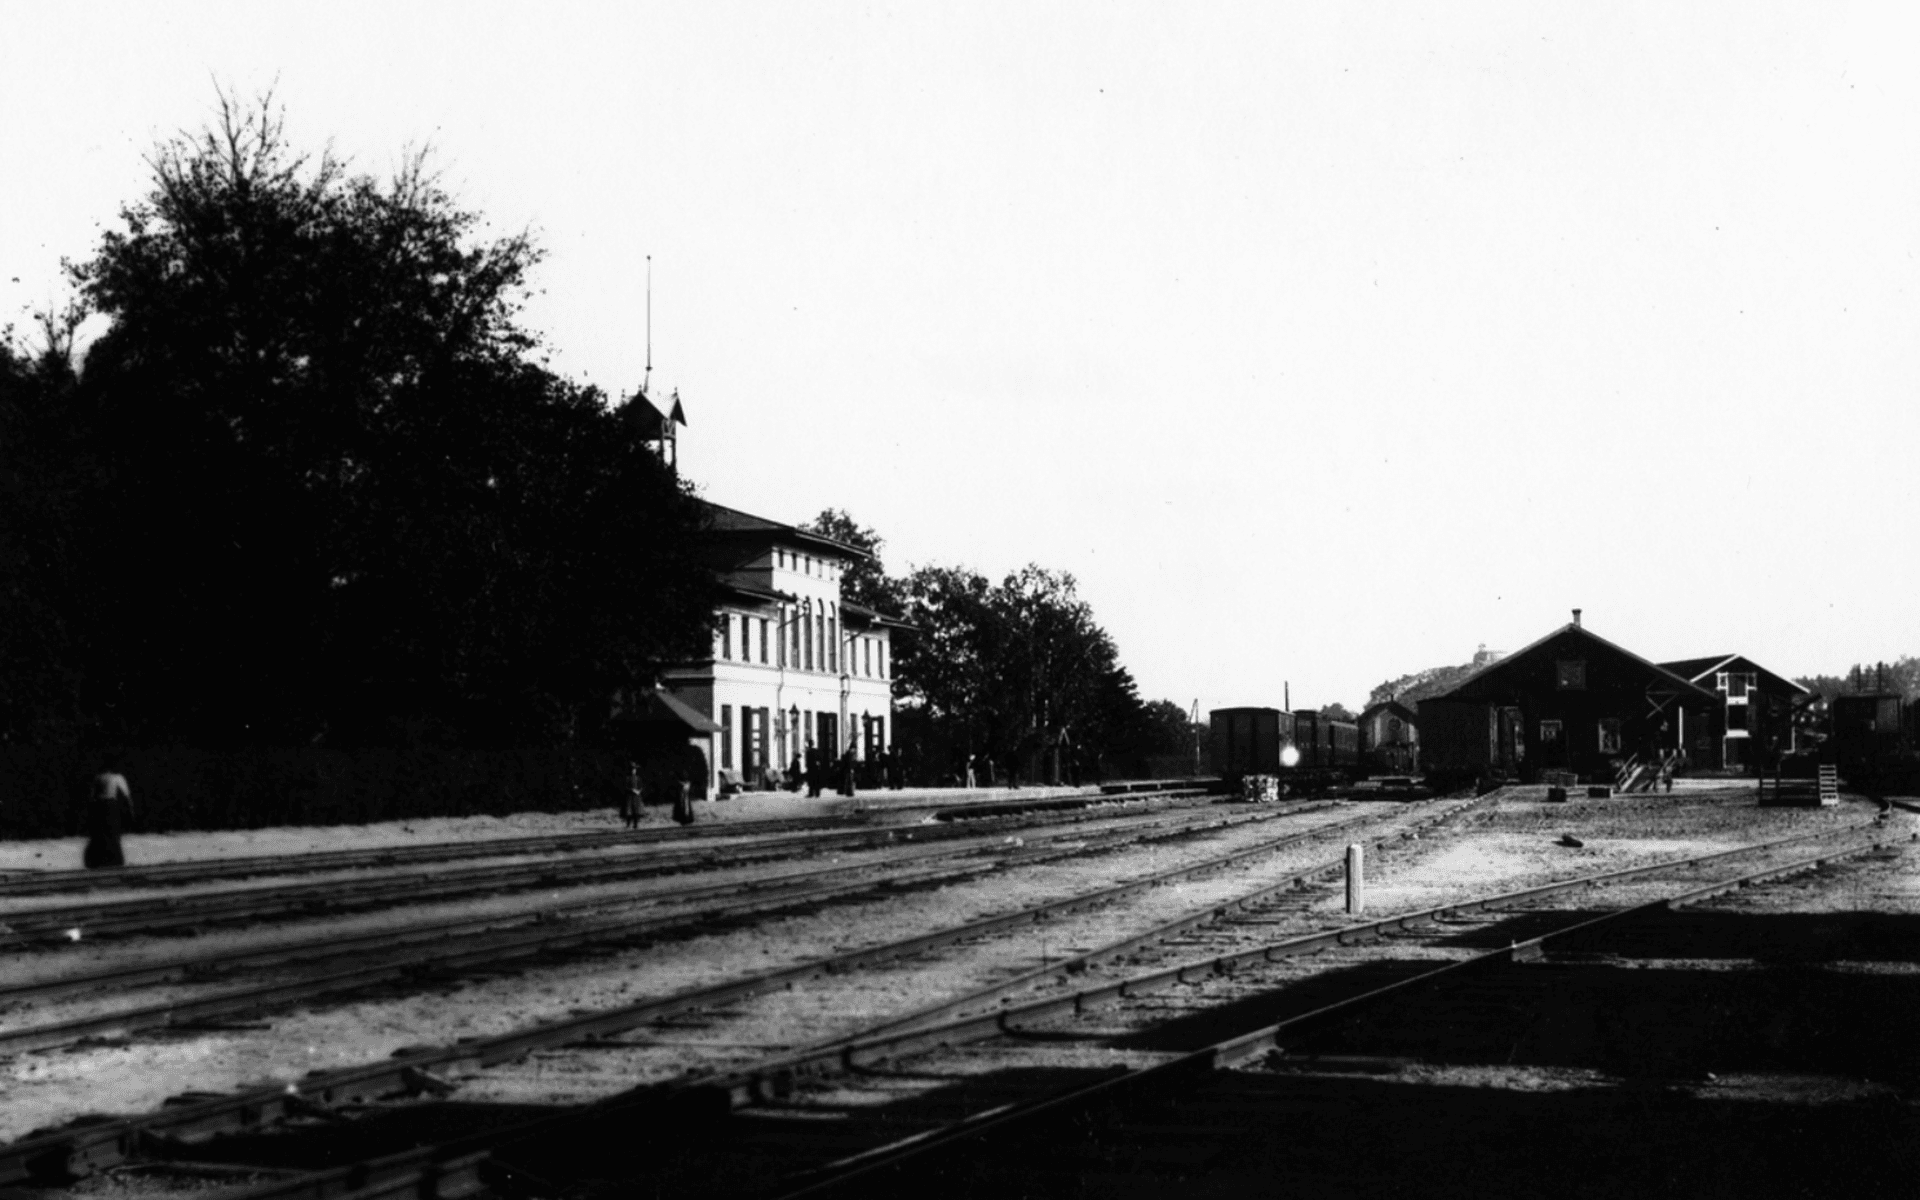 Järnvägsstationen i Alingsås. Fotografering - 1900 — 1910.